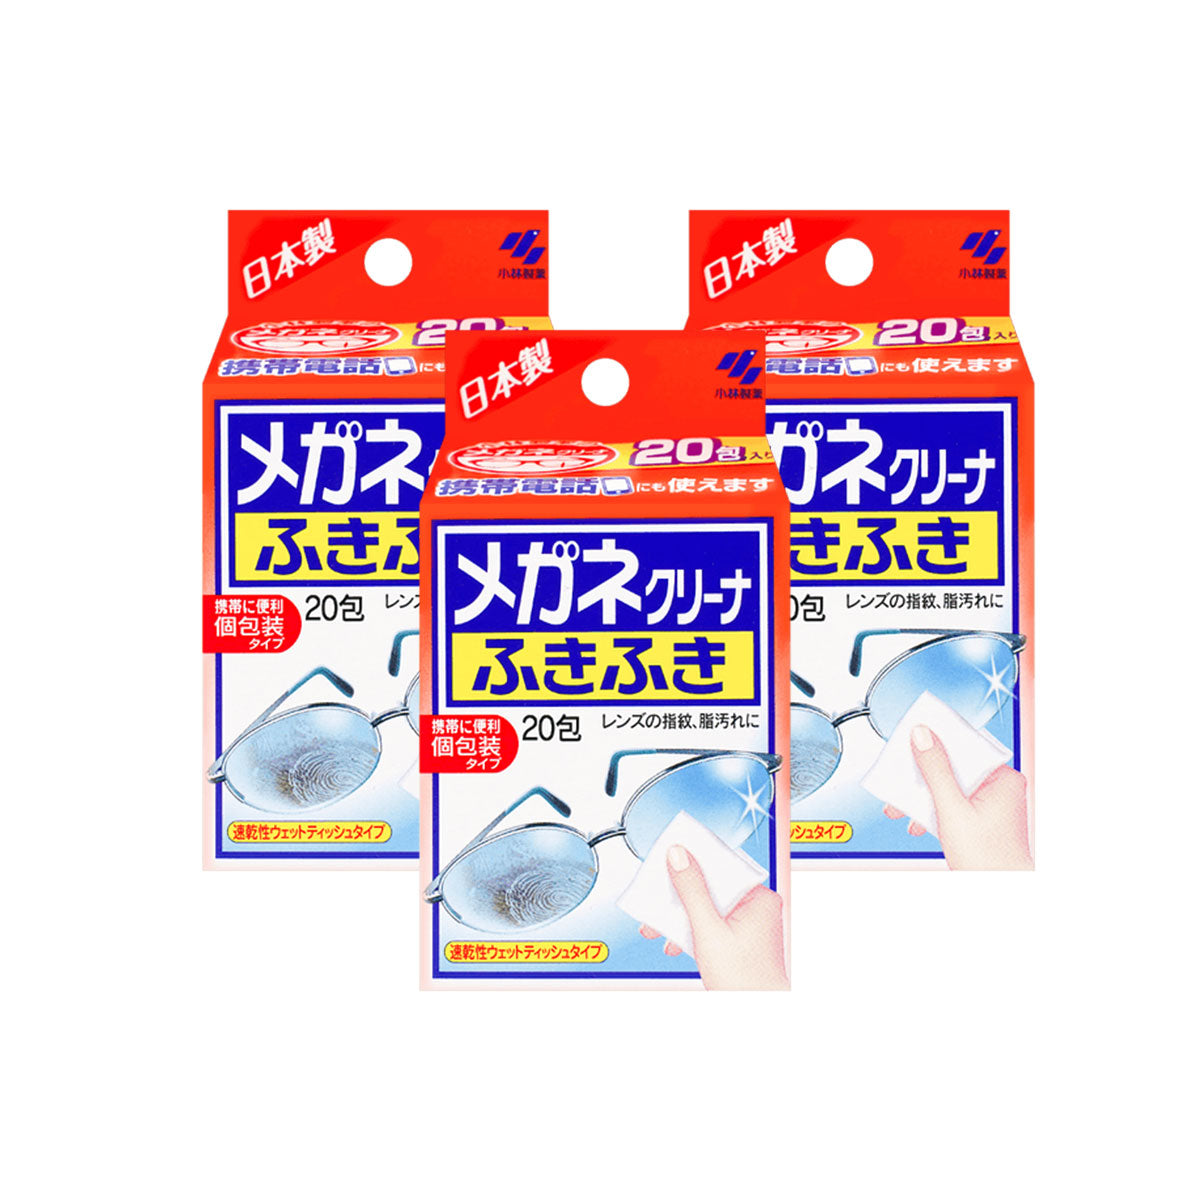 日本Kobayashi小林制药除菌眼镜清洁纸 60片